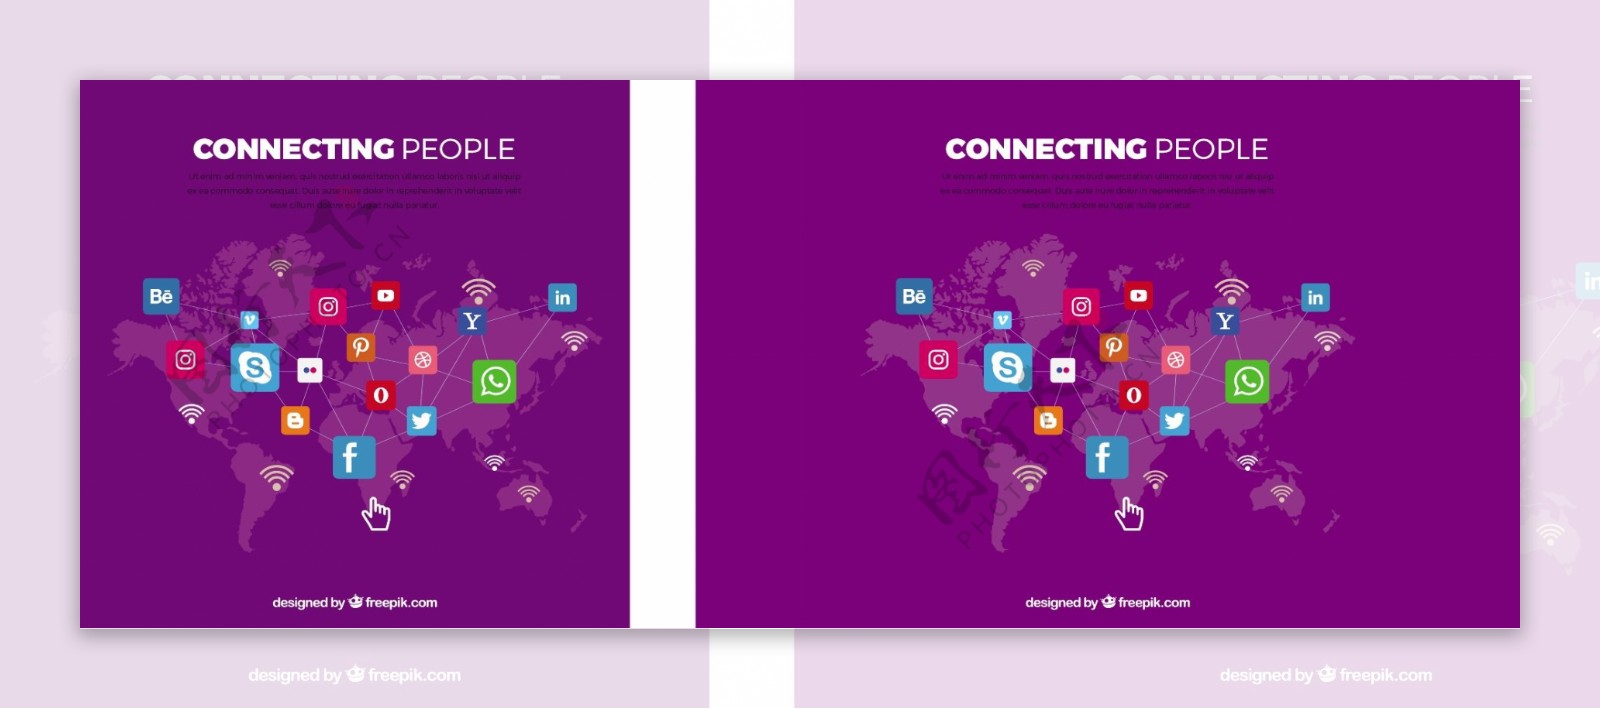 紫色背景与世界地图和社会网络图标